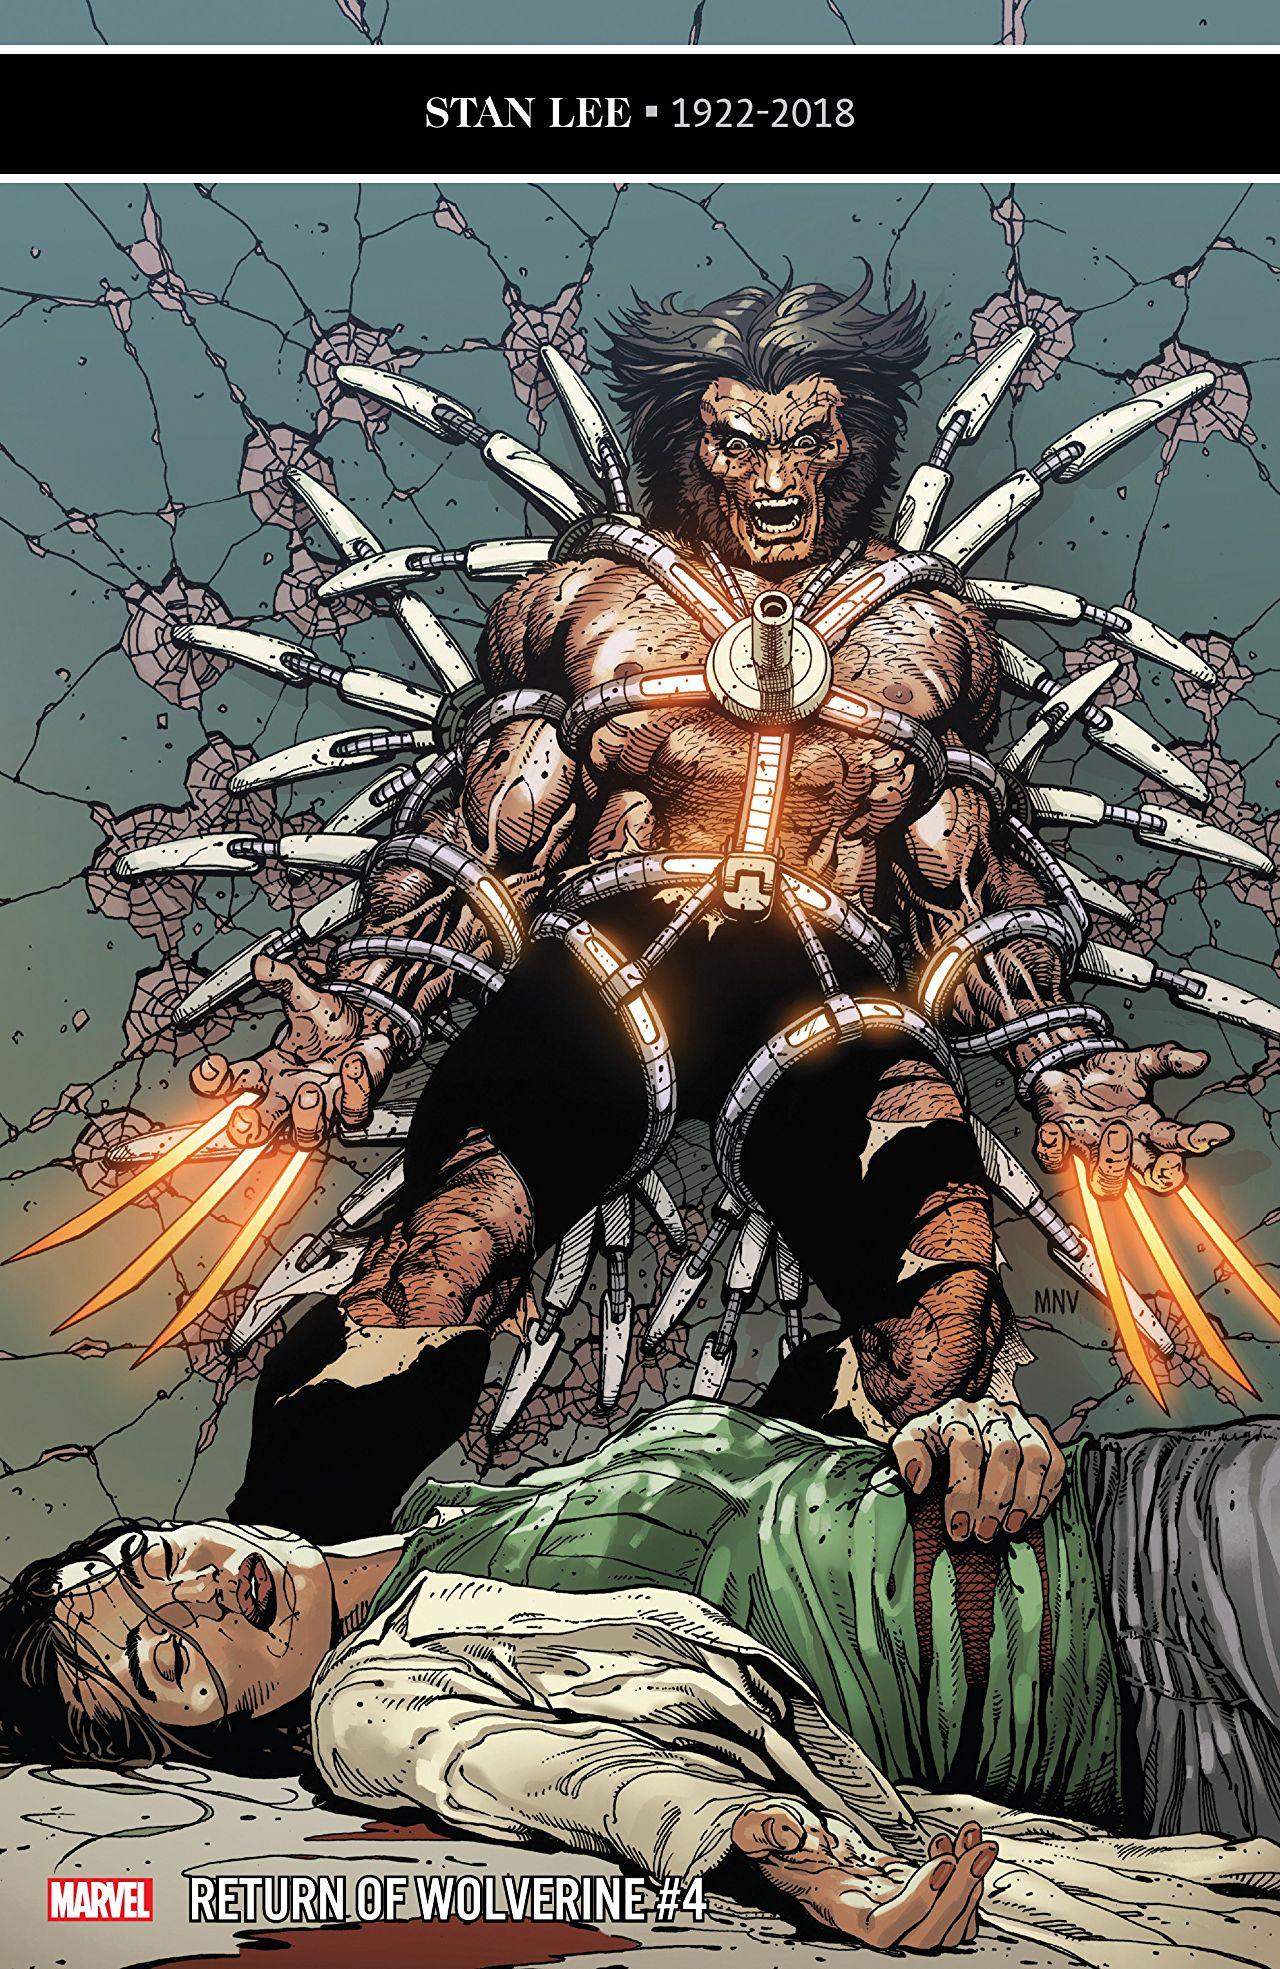 Return of Wolverine Vol. 1 #4